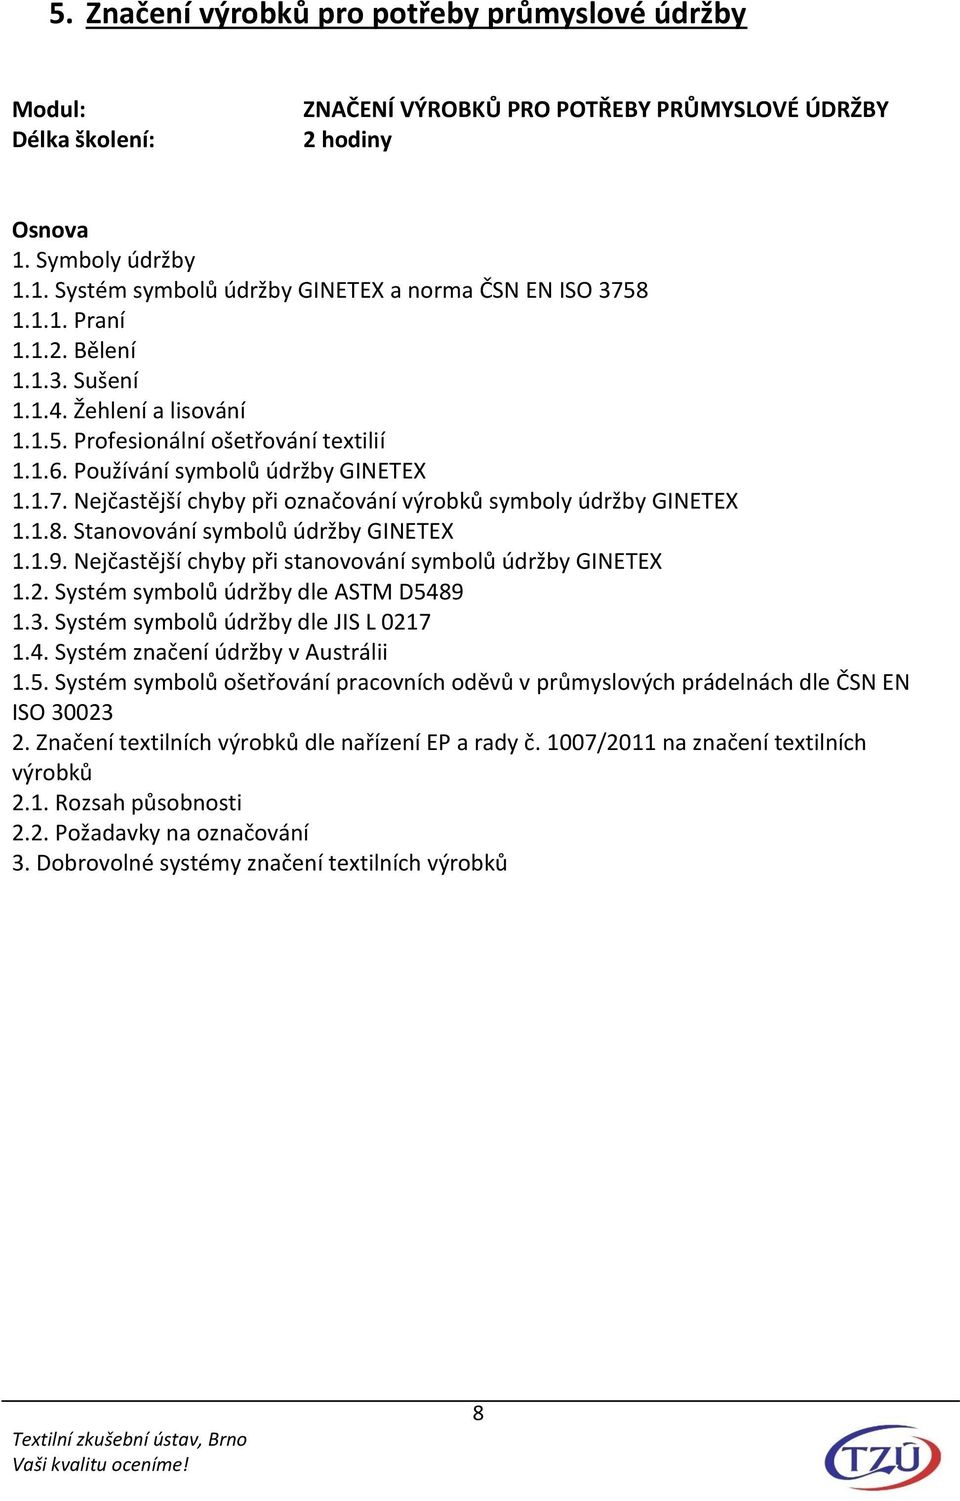 Stanovování symbolů údržby GINETEX 1.1.9. Nejčastější chyby při stanovování symbolů údržby GINETEX 1.2. Systém symbolů údržby dle ASTM D5489 1.3. Systém symbolů údržby dle JIS L 0217 1.4. Systém značení údržby v Austrálii 1.